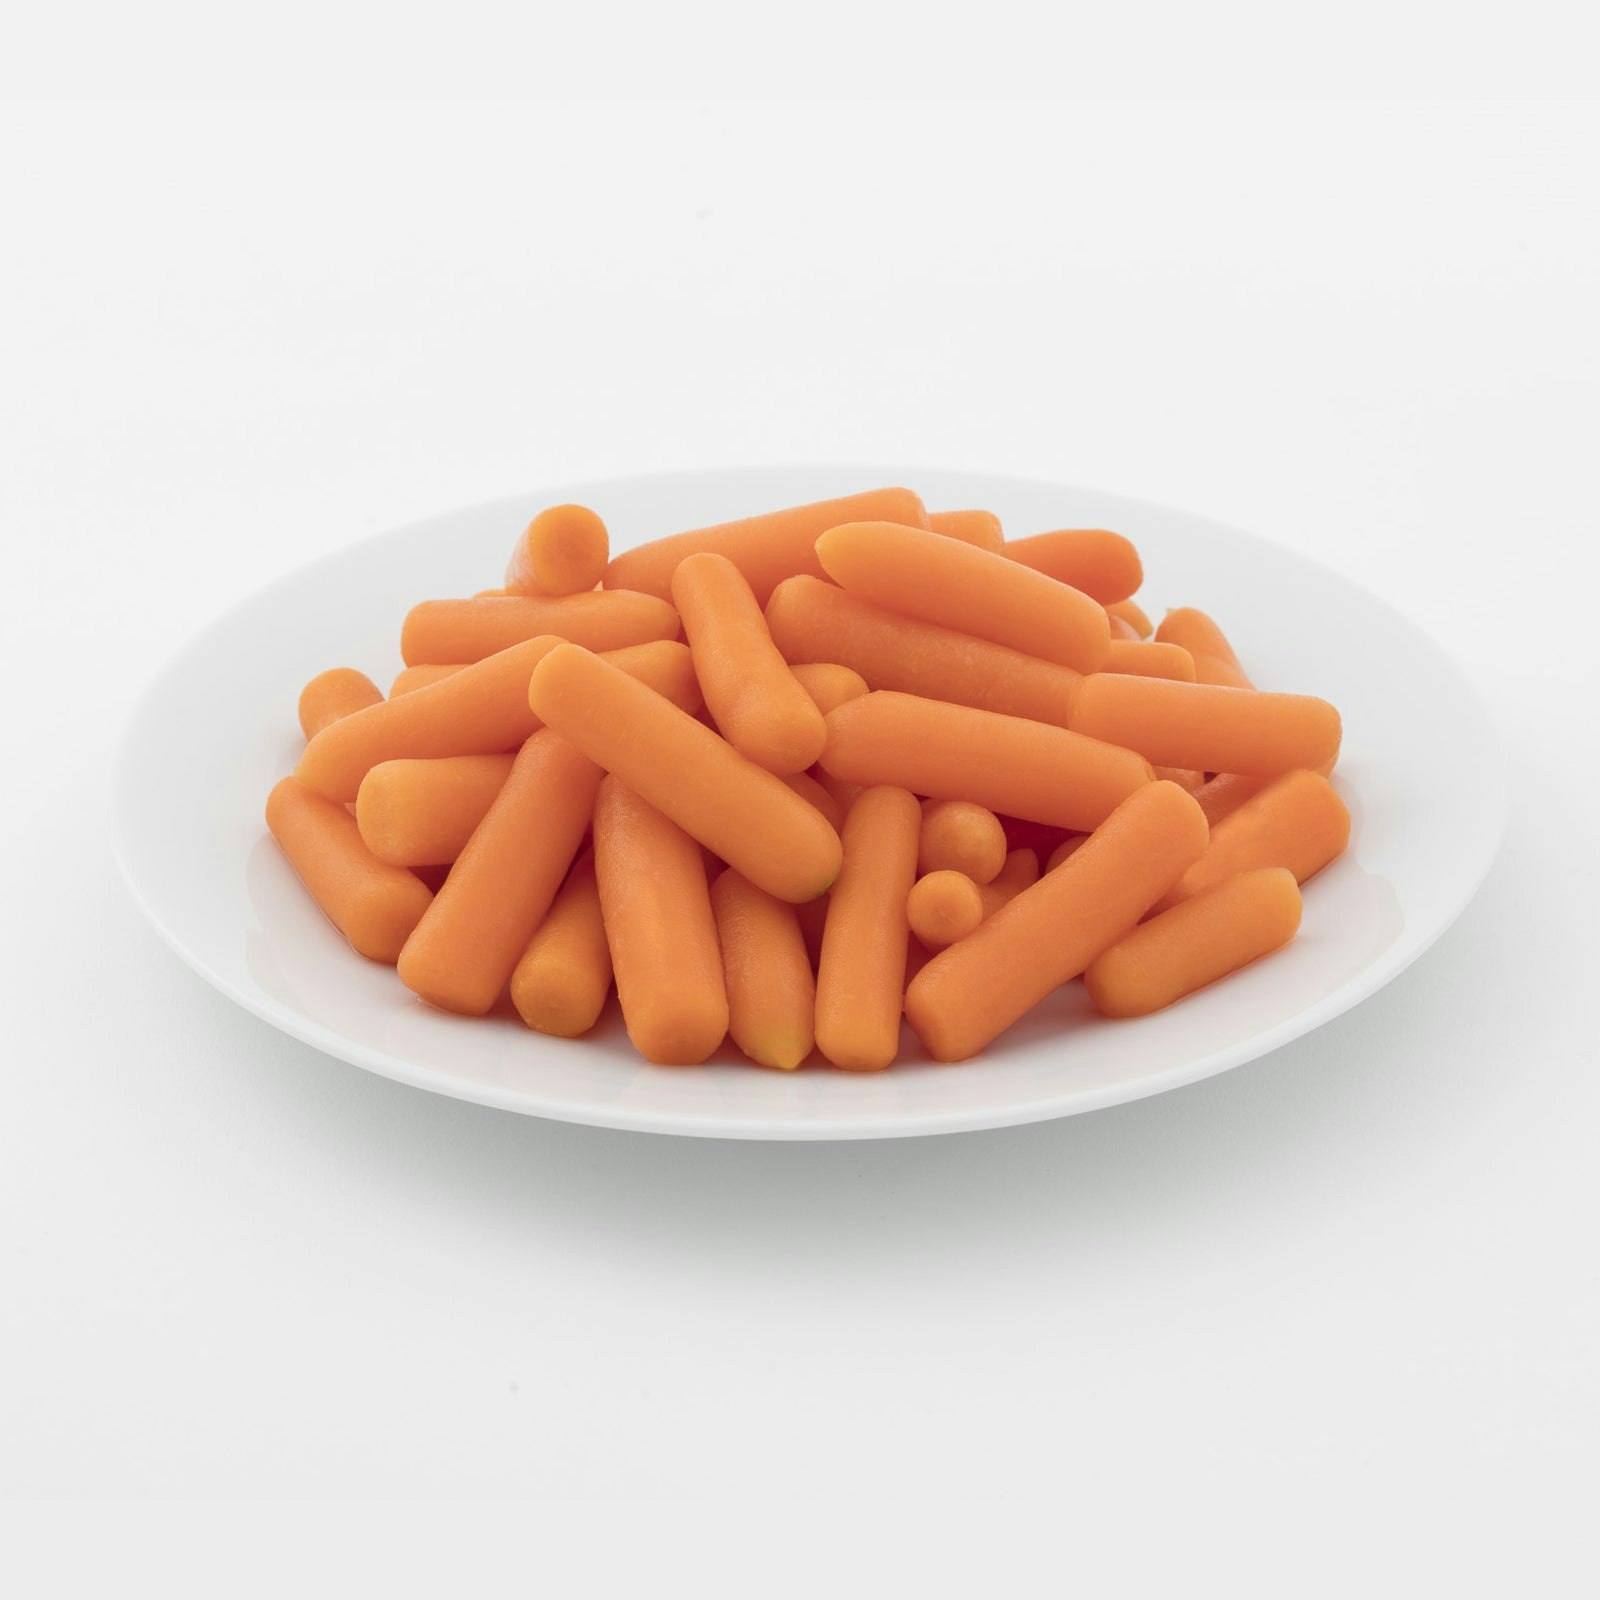 BELOW ZERO Baby carrots